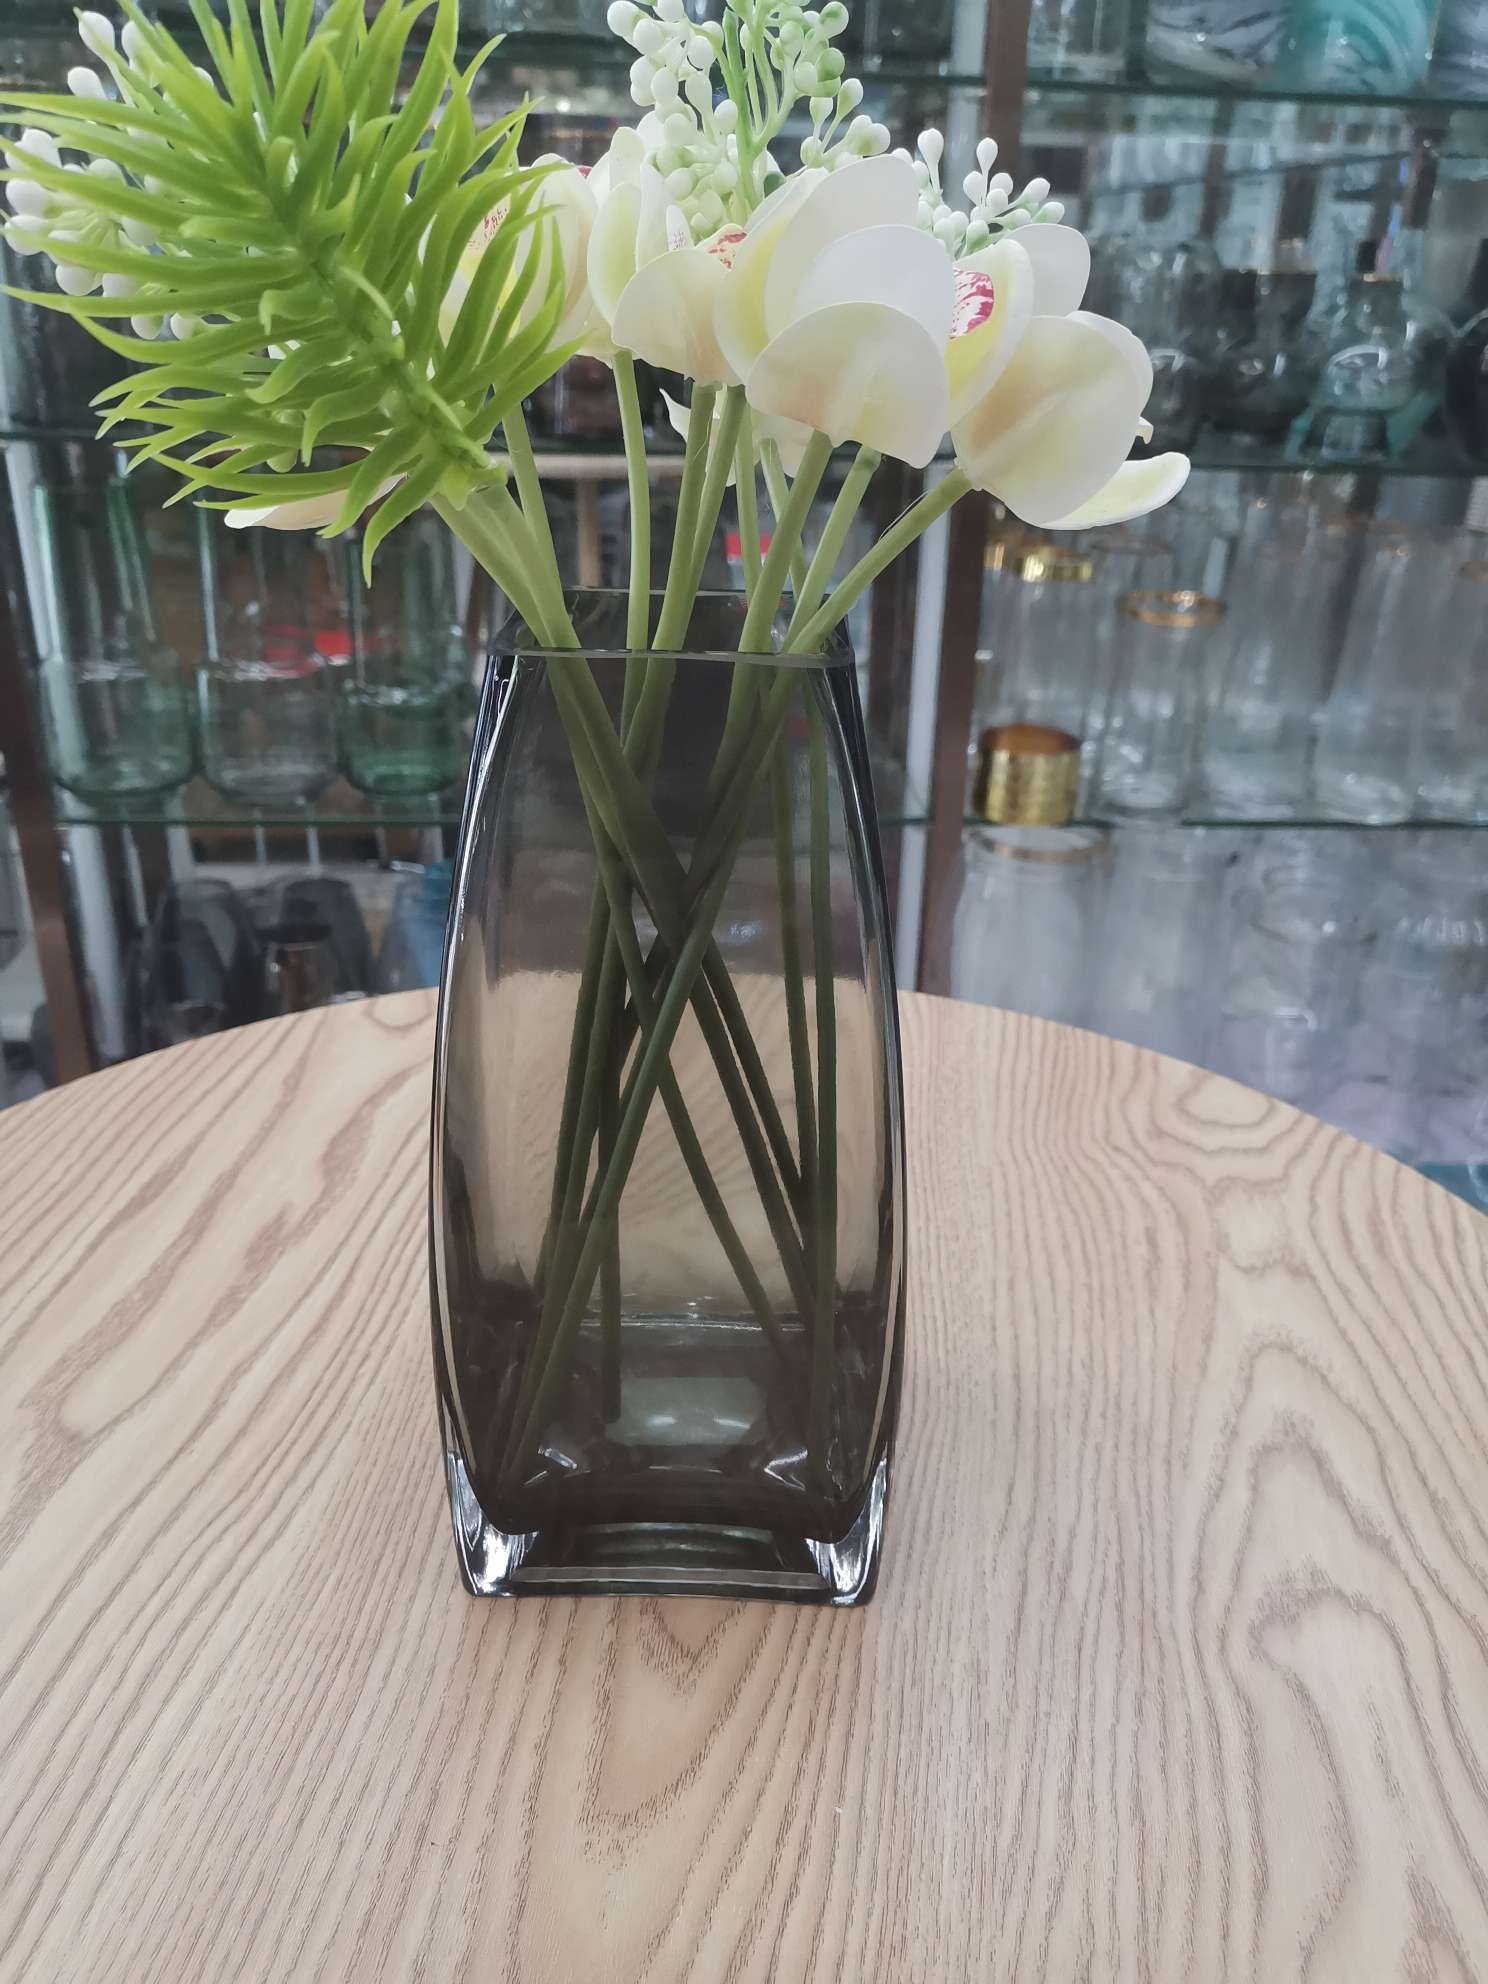 欧式轻奢创意水立方方形玻璃花瓶透明烟灰色玻璃花瓶客厅桌面摆件